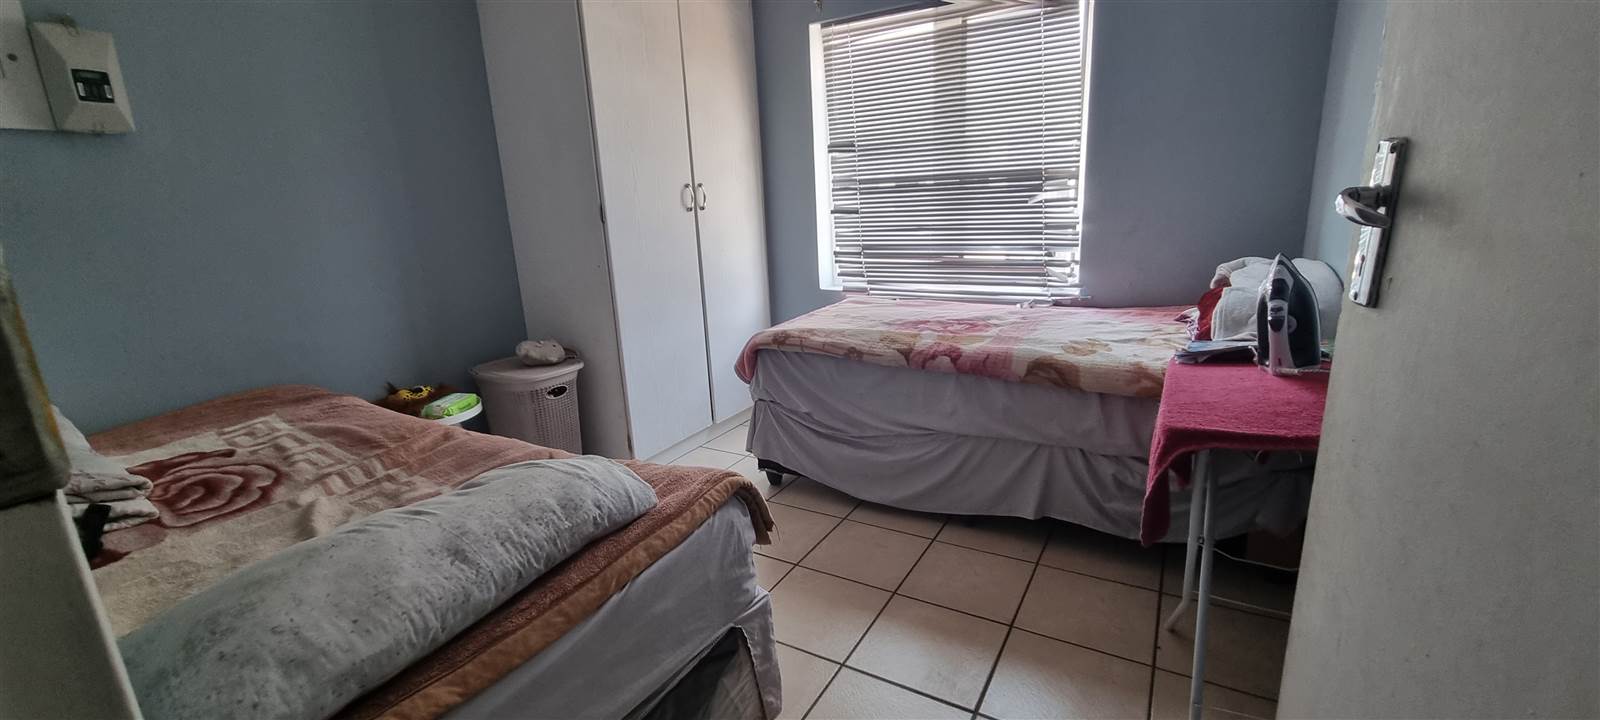 2 Bed Duplex in Rietfontein photo number 5